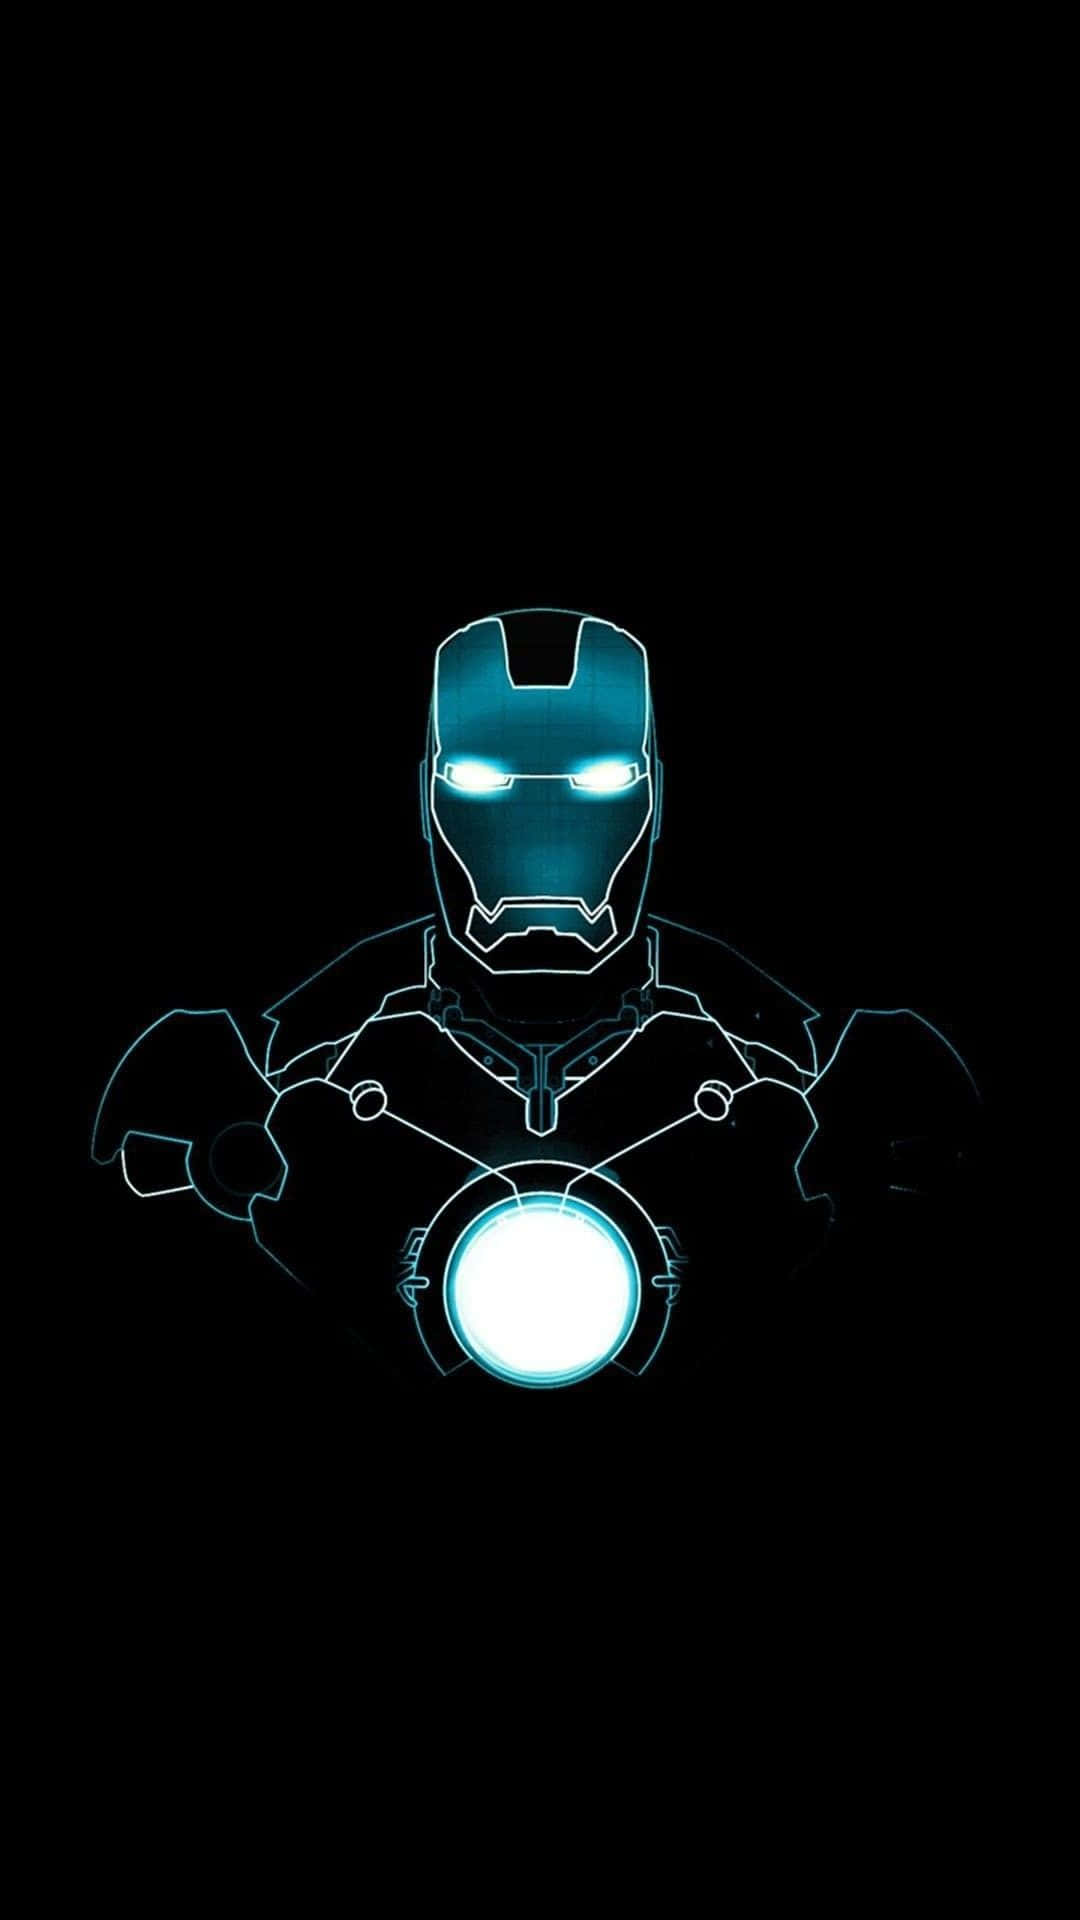 Vivil'esperienza Del Potere Dei Supereroi Con L'iphone X Di Iron Man Sfondo